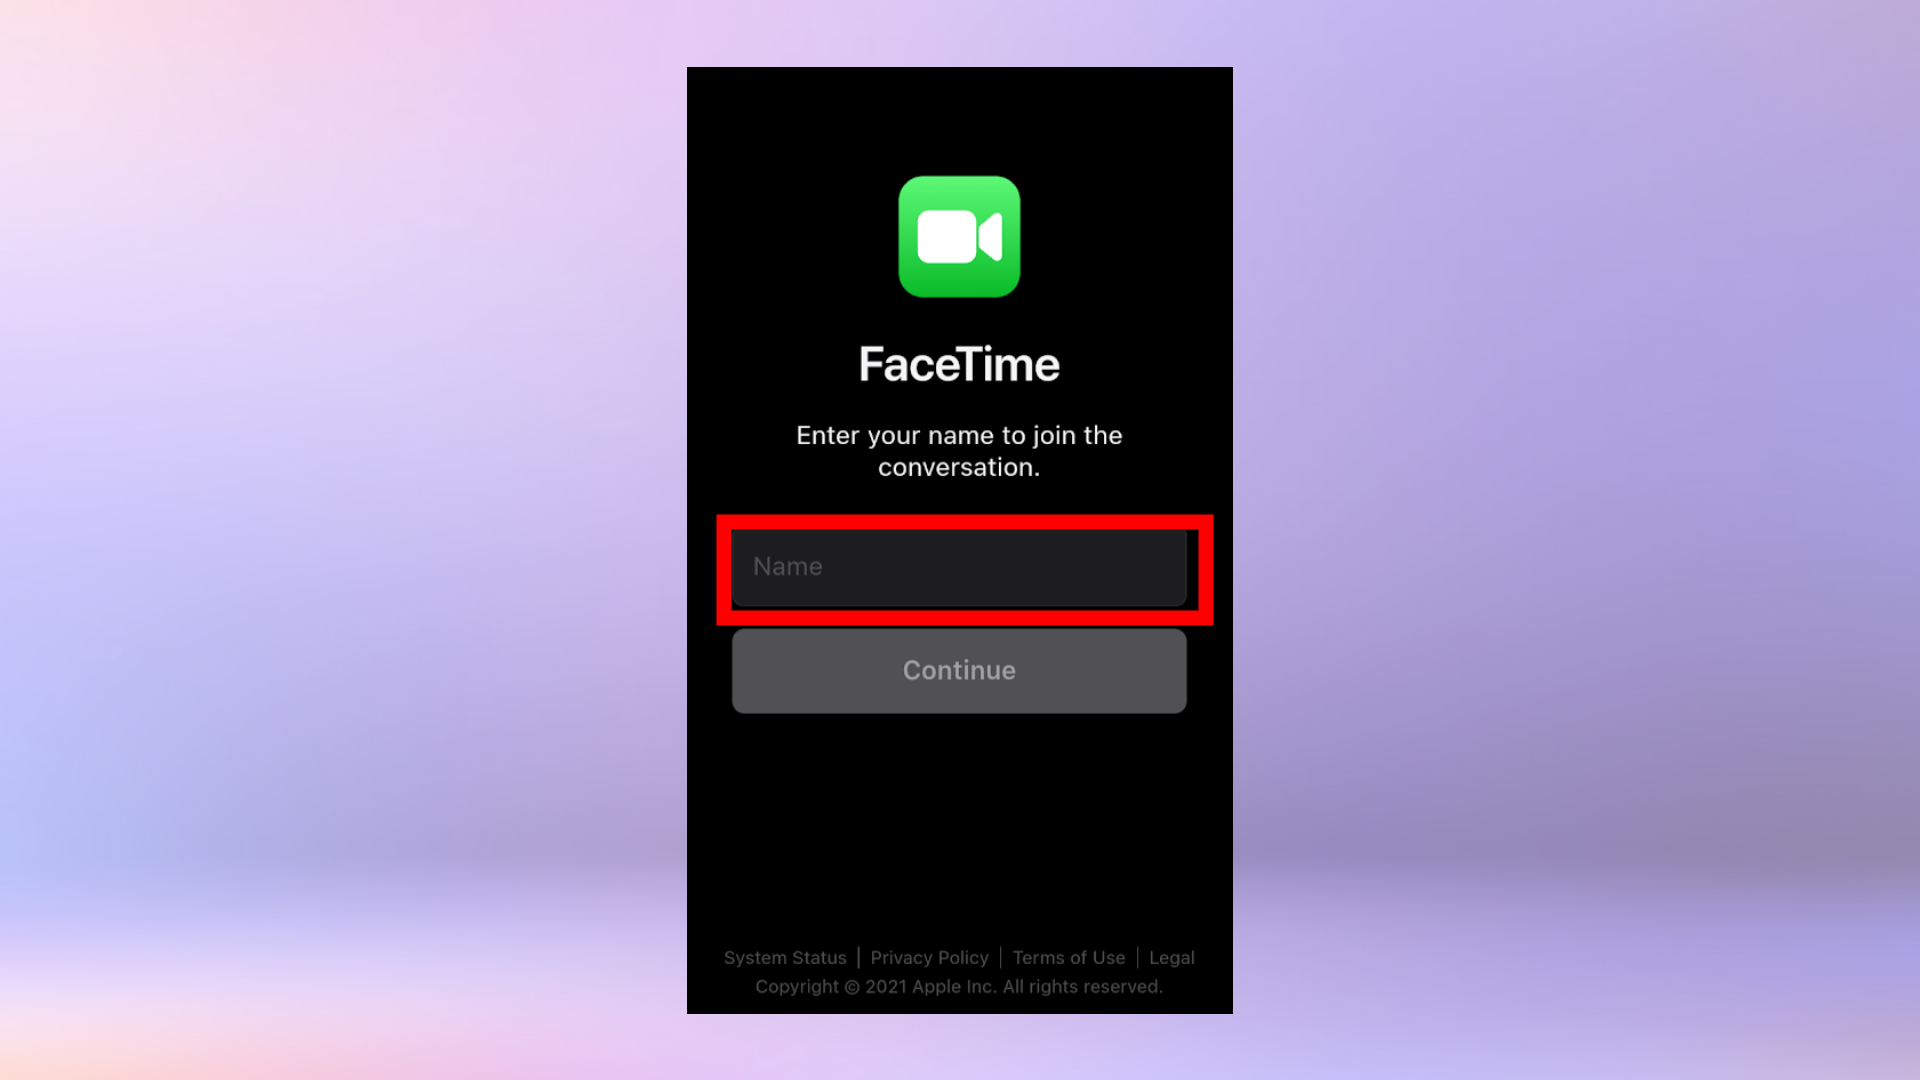 Снимок экрана Facetime на Android с просьбой ввести свое имя.